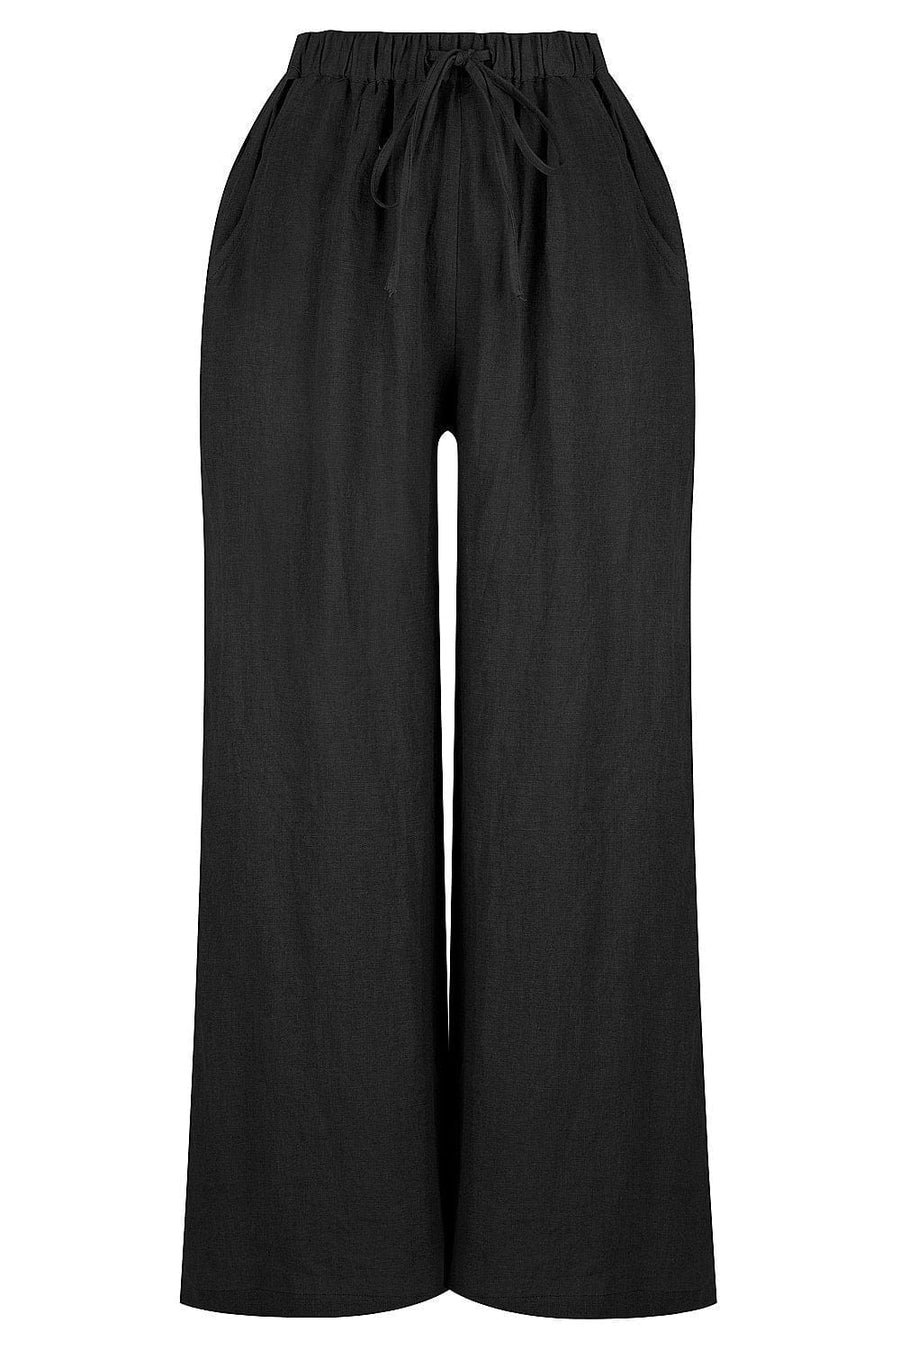 Linen co. Linen Drawstring Pant in Black